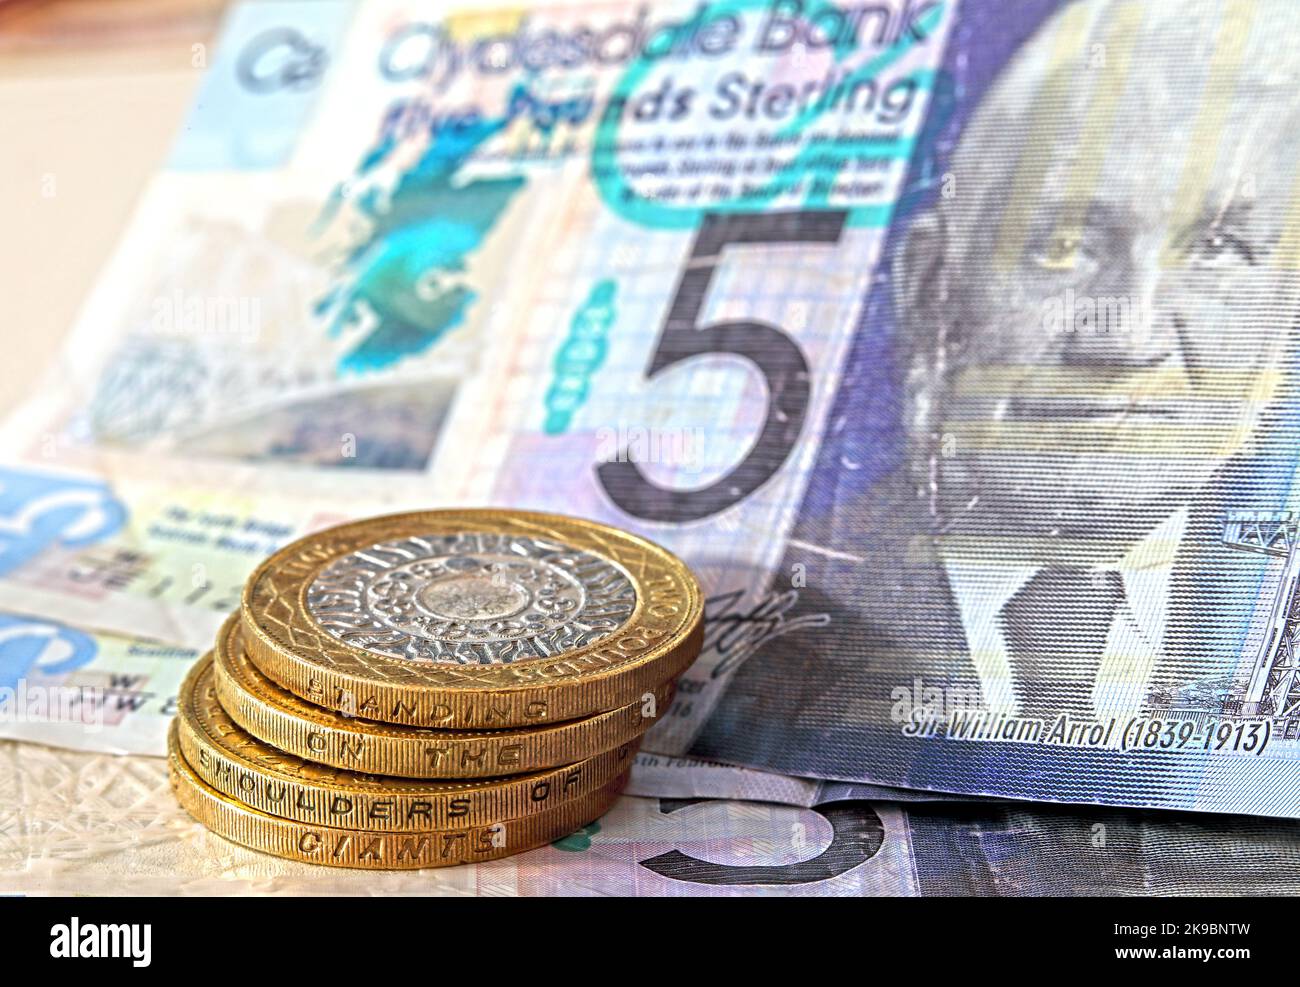 Billets de banque en livres sterling écossais, deux pièces de monnaie d'étang, une future monnaie temporaire après un éventuel vote d'indépendance du SNP réussi Banque D'Images